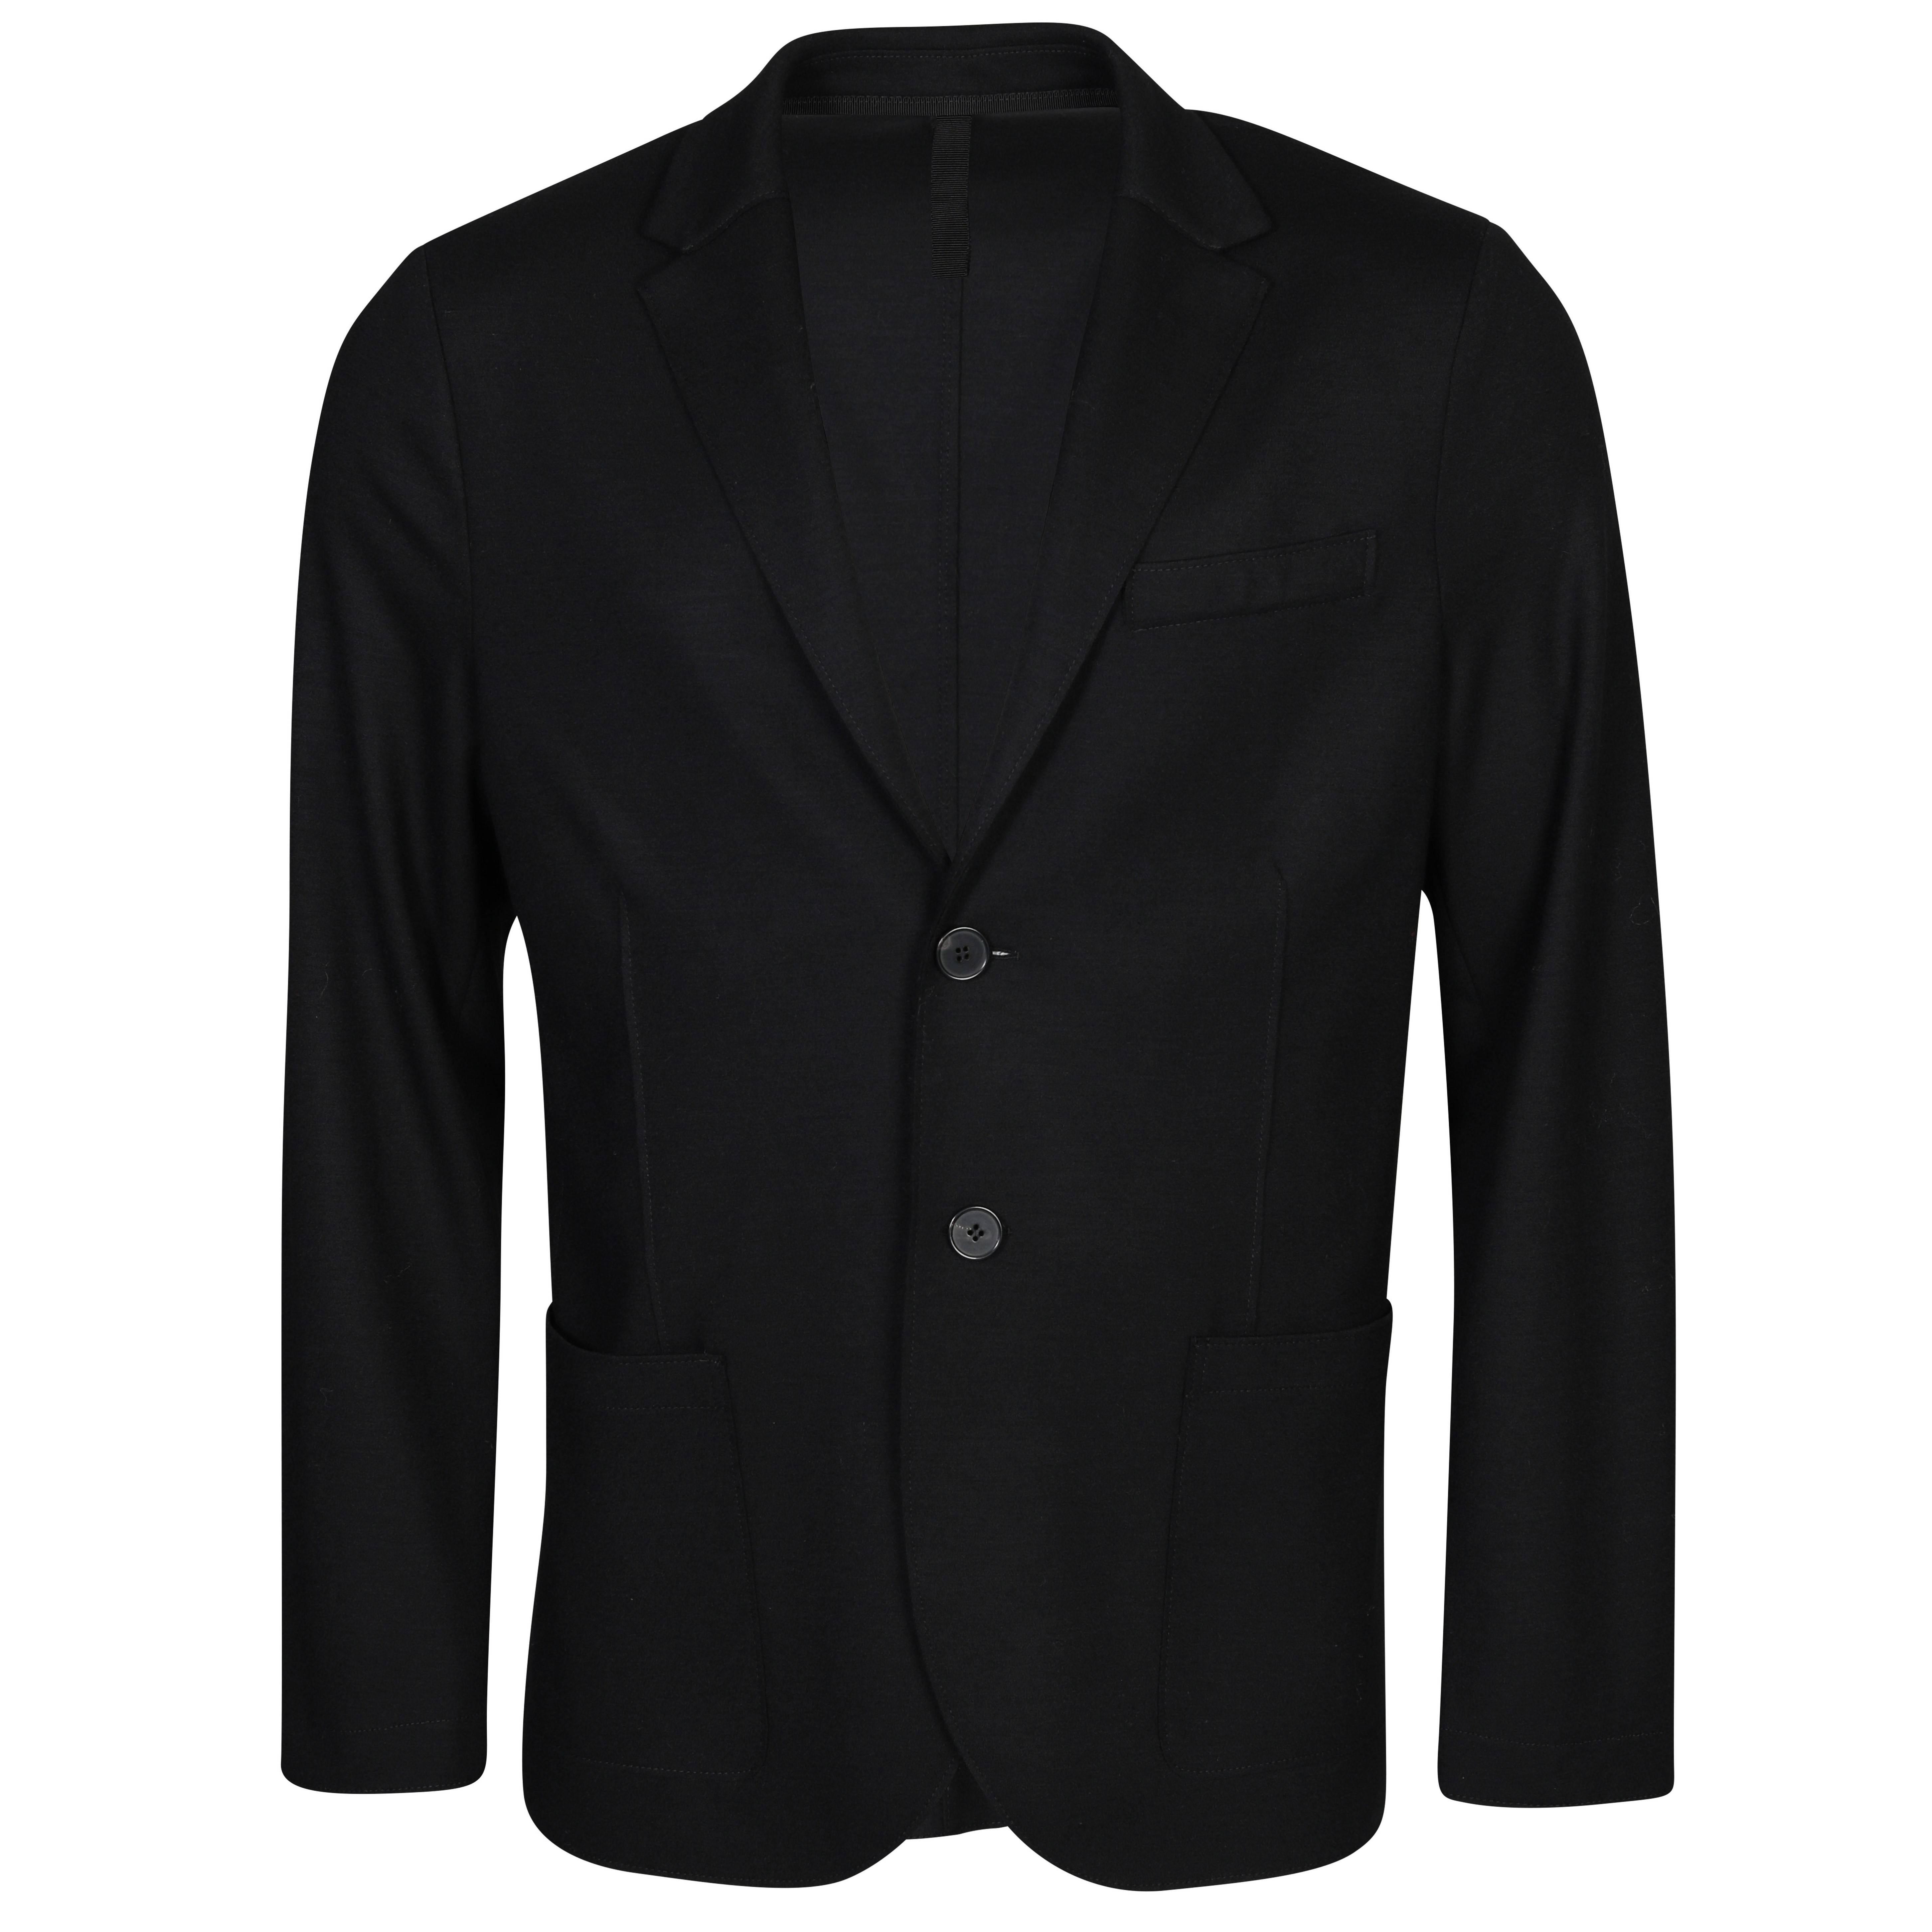 HARRIS WHARF Wool Jacket in Black 50